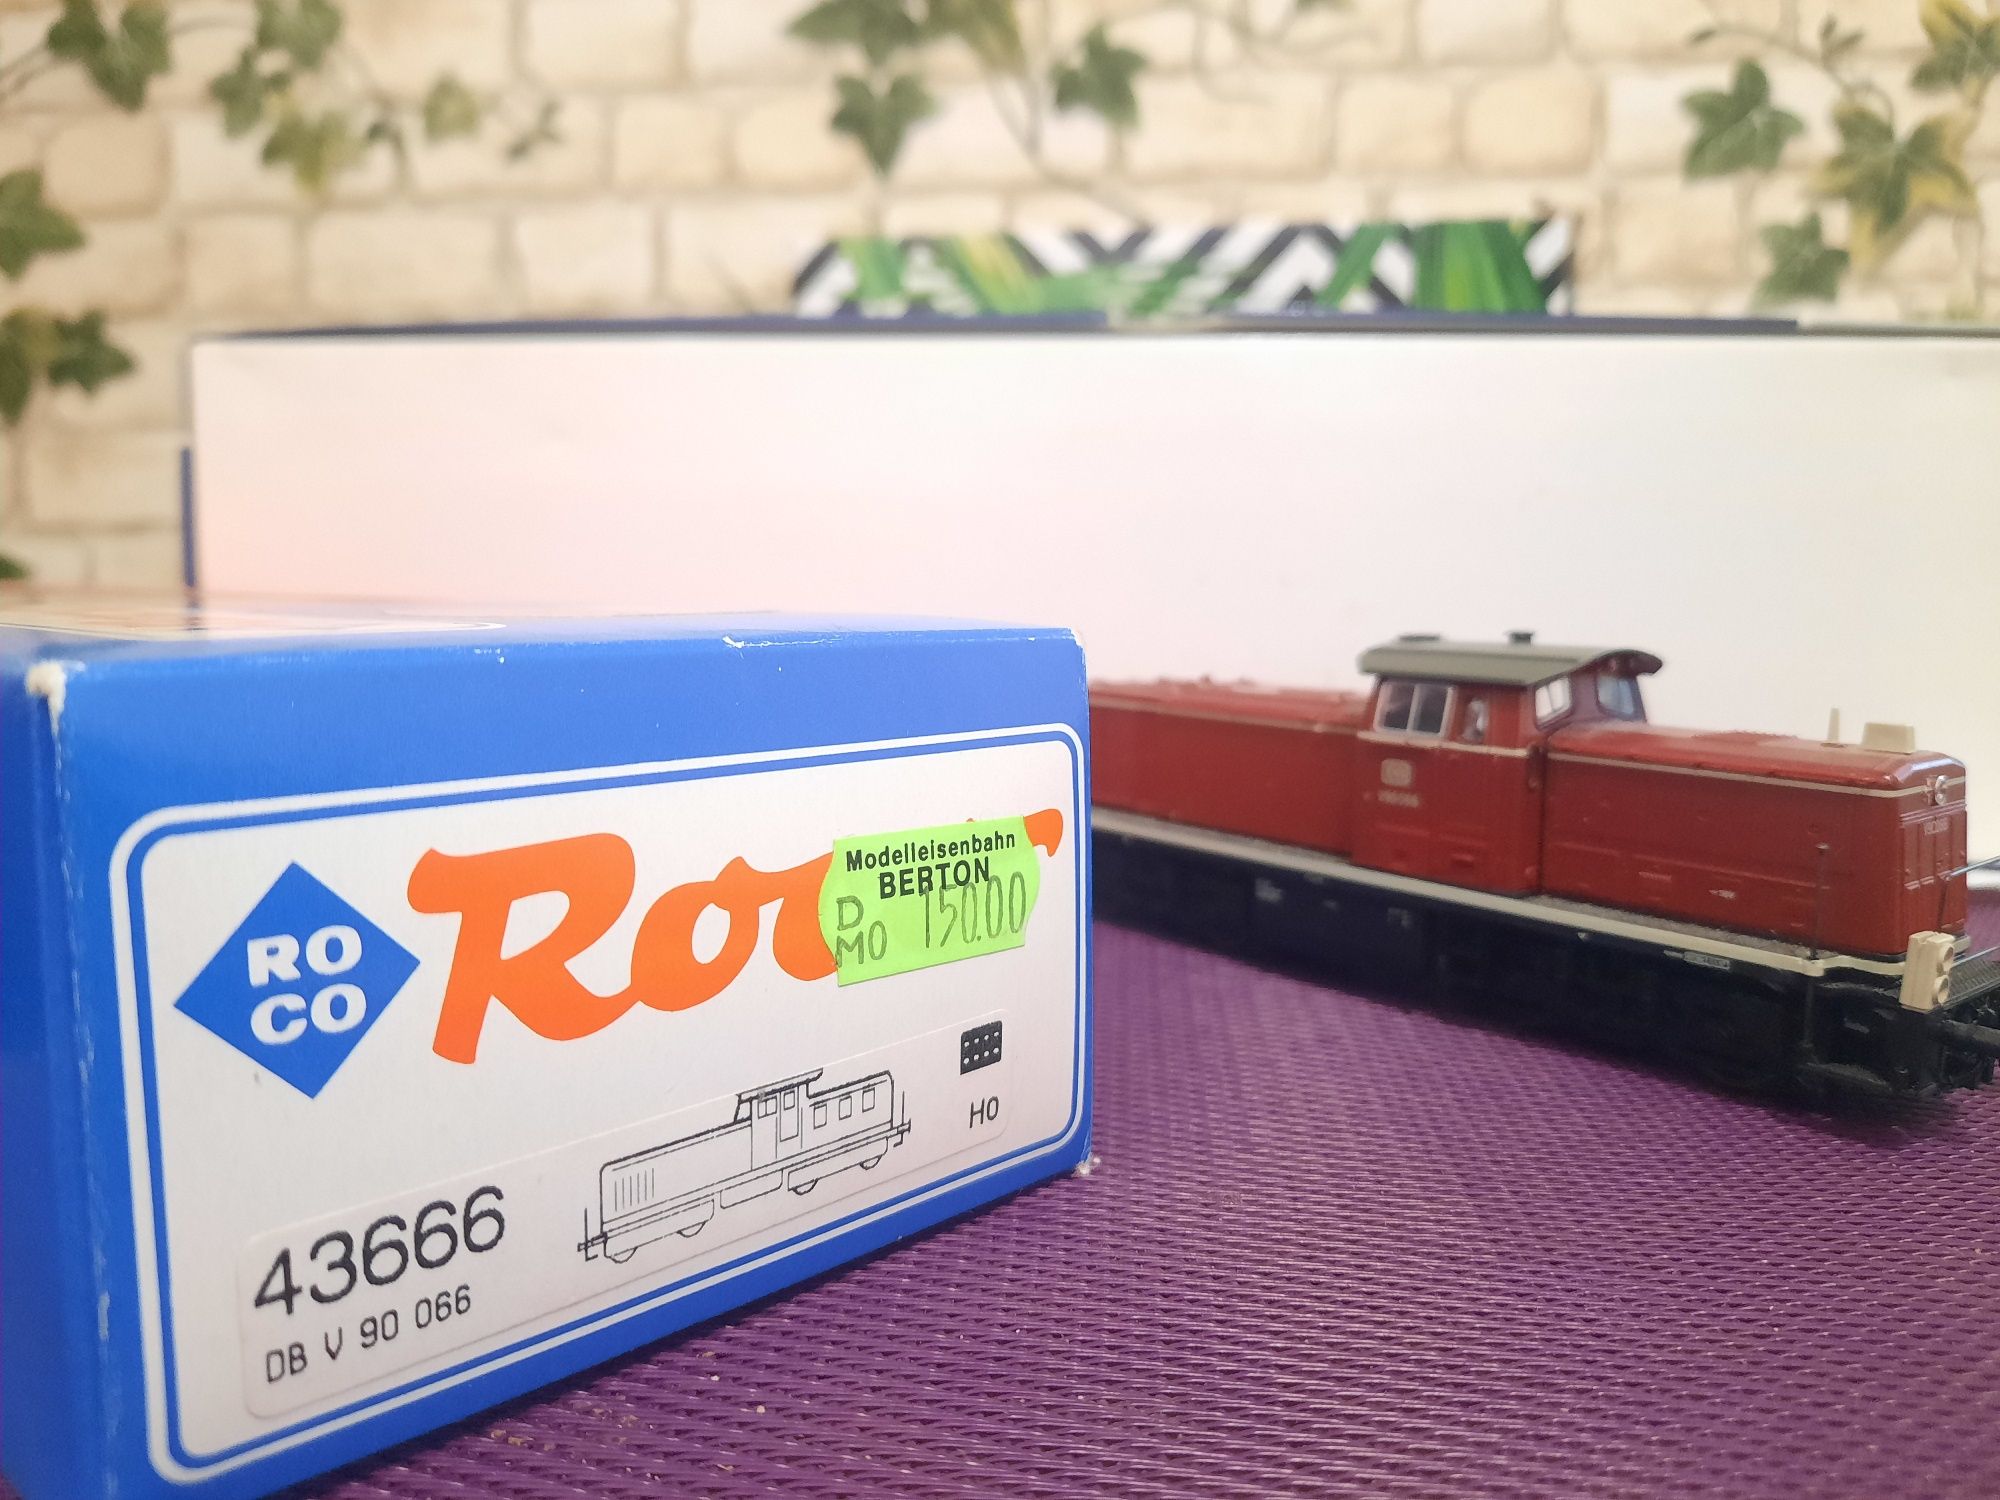 Locomotiva diesel Roco 43666 H0 DC